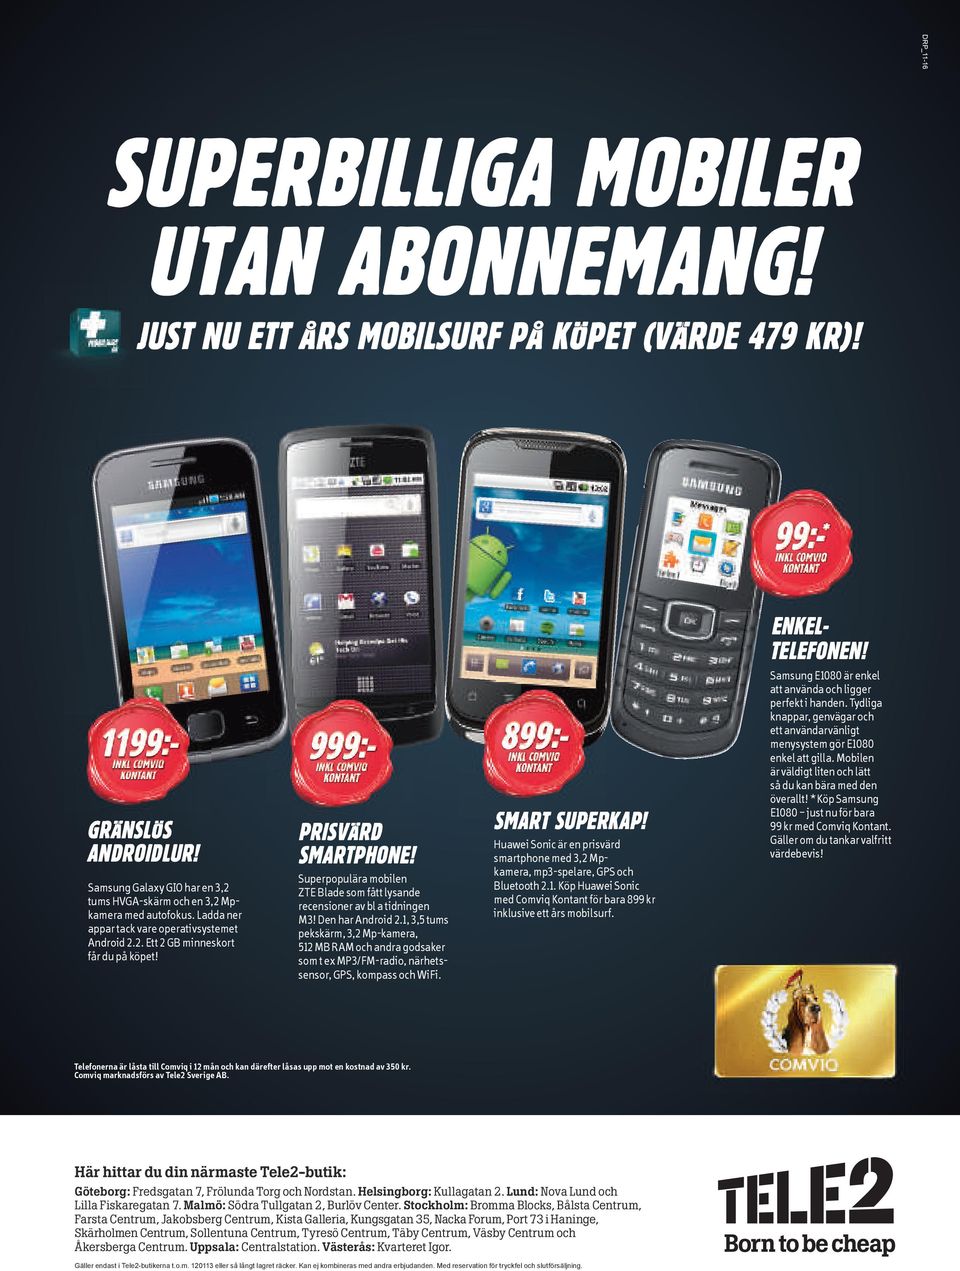 999: :- INKL COMVIQ KONTANT PRISVÄRD SMARTPHONE! Superpopulära mobilen ZTE Blade som fått lysande recensioner av bl a tidningen M3! Den har Android 2.